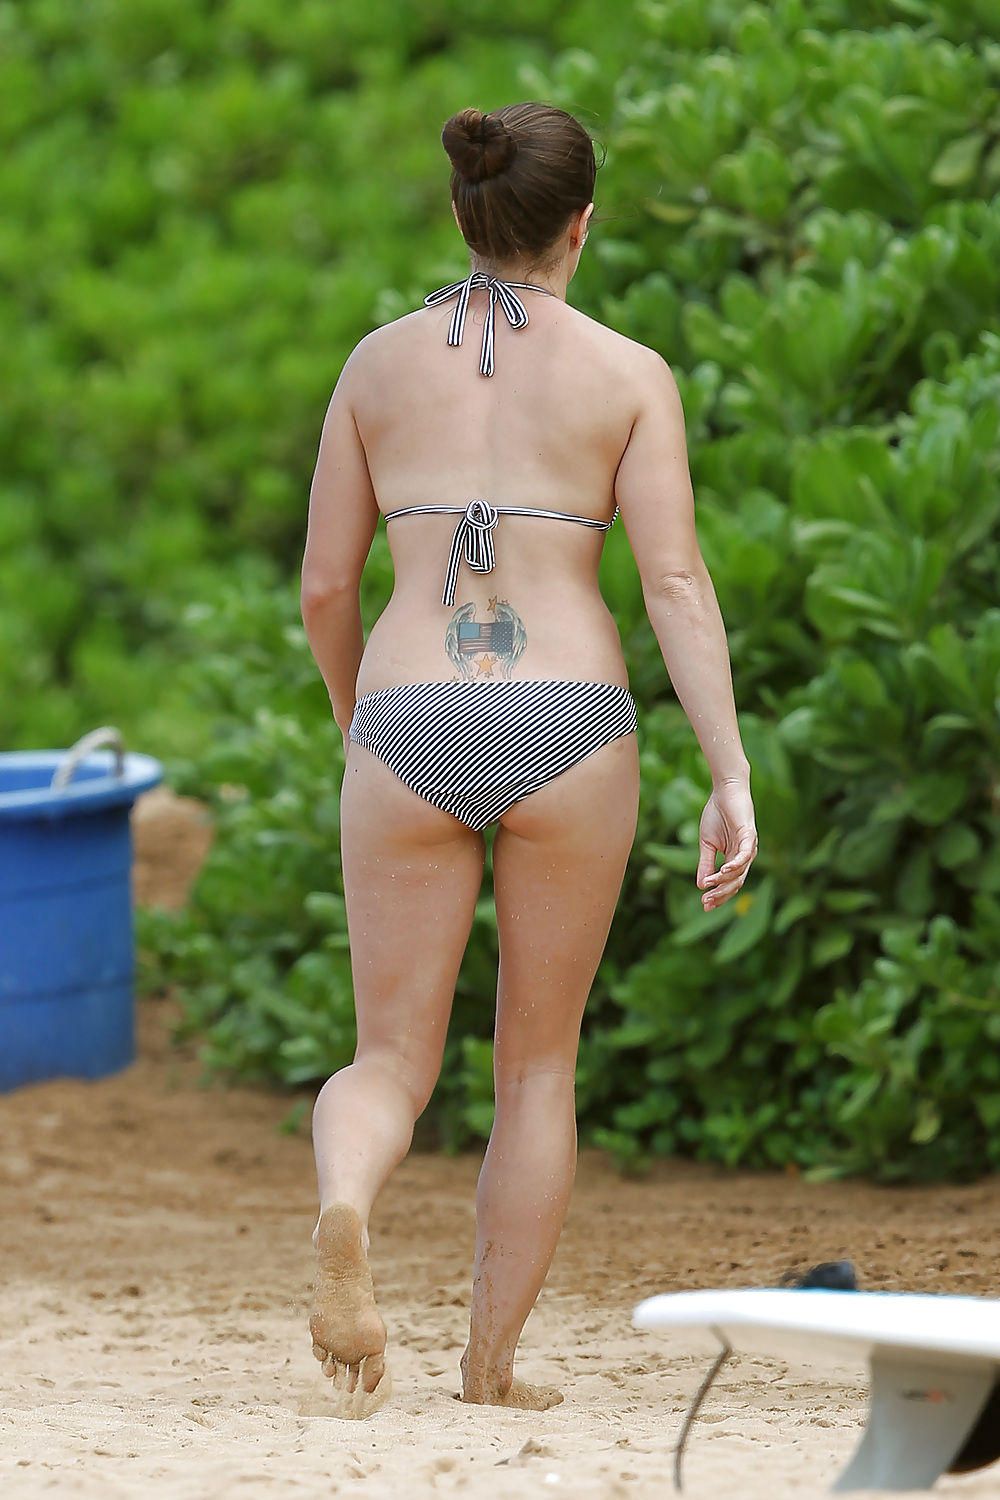 Danica Patrick wearing a bikini on a beach in Hawaii #6481275